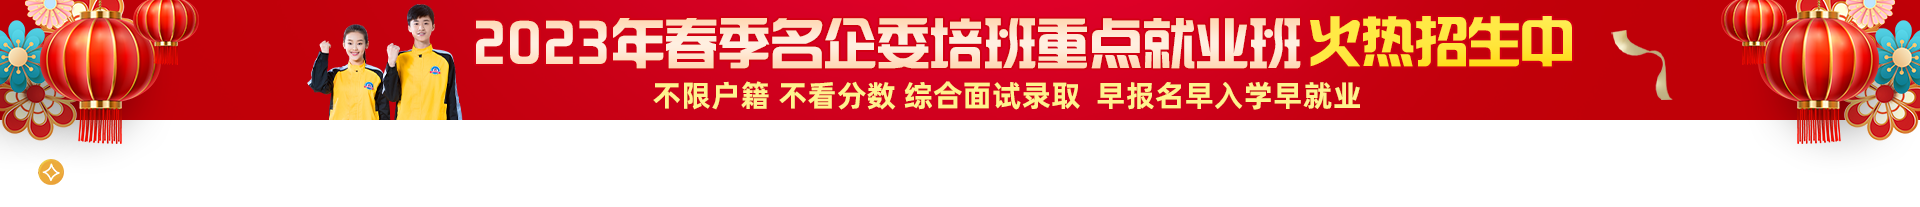 上海万通汽车logo